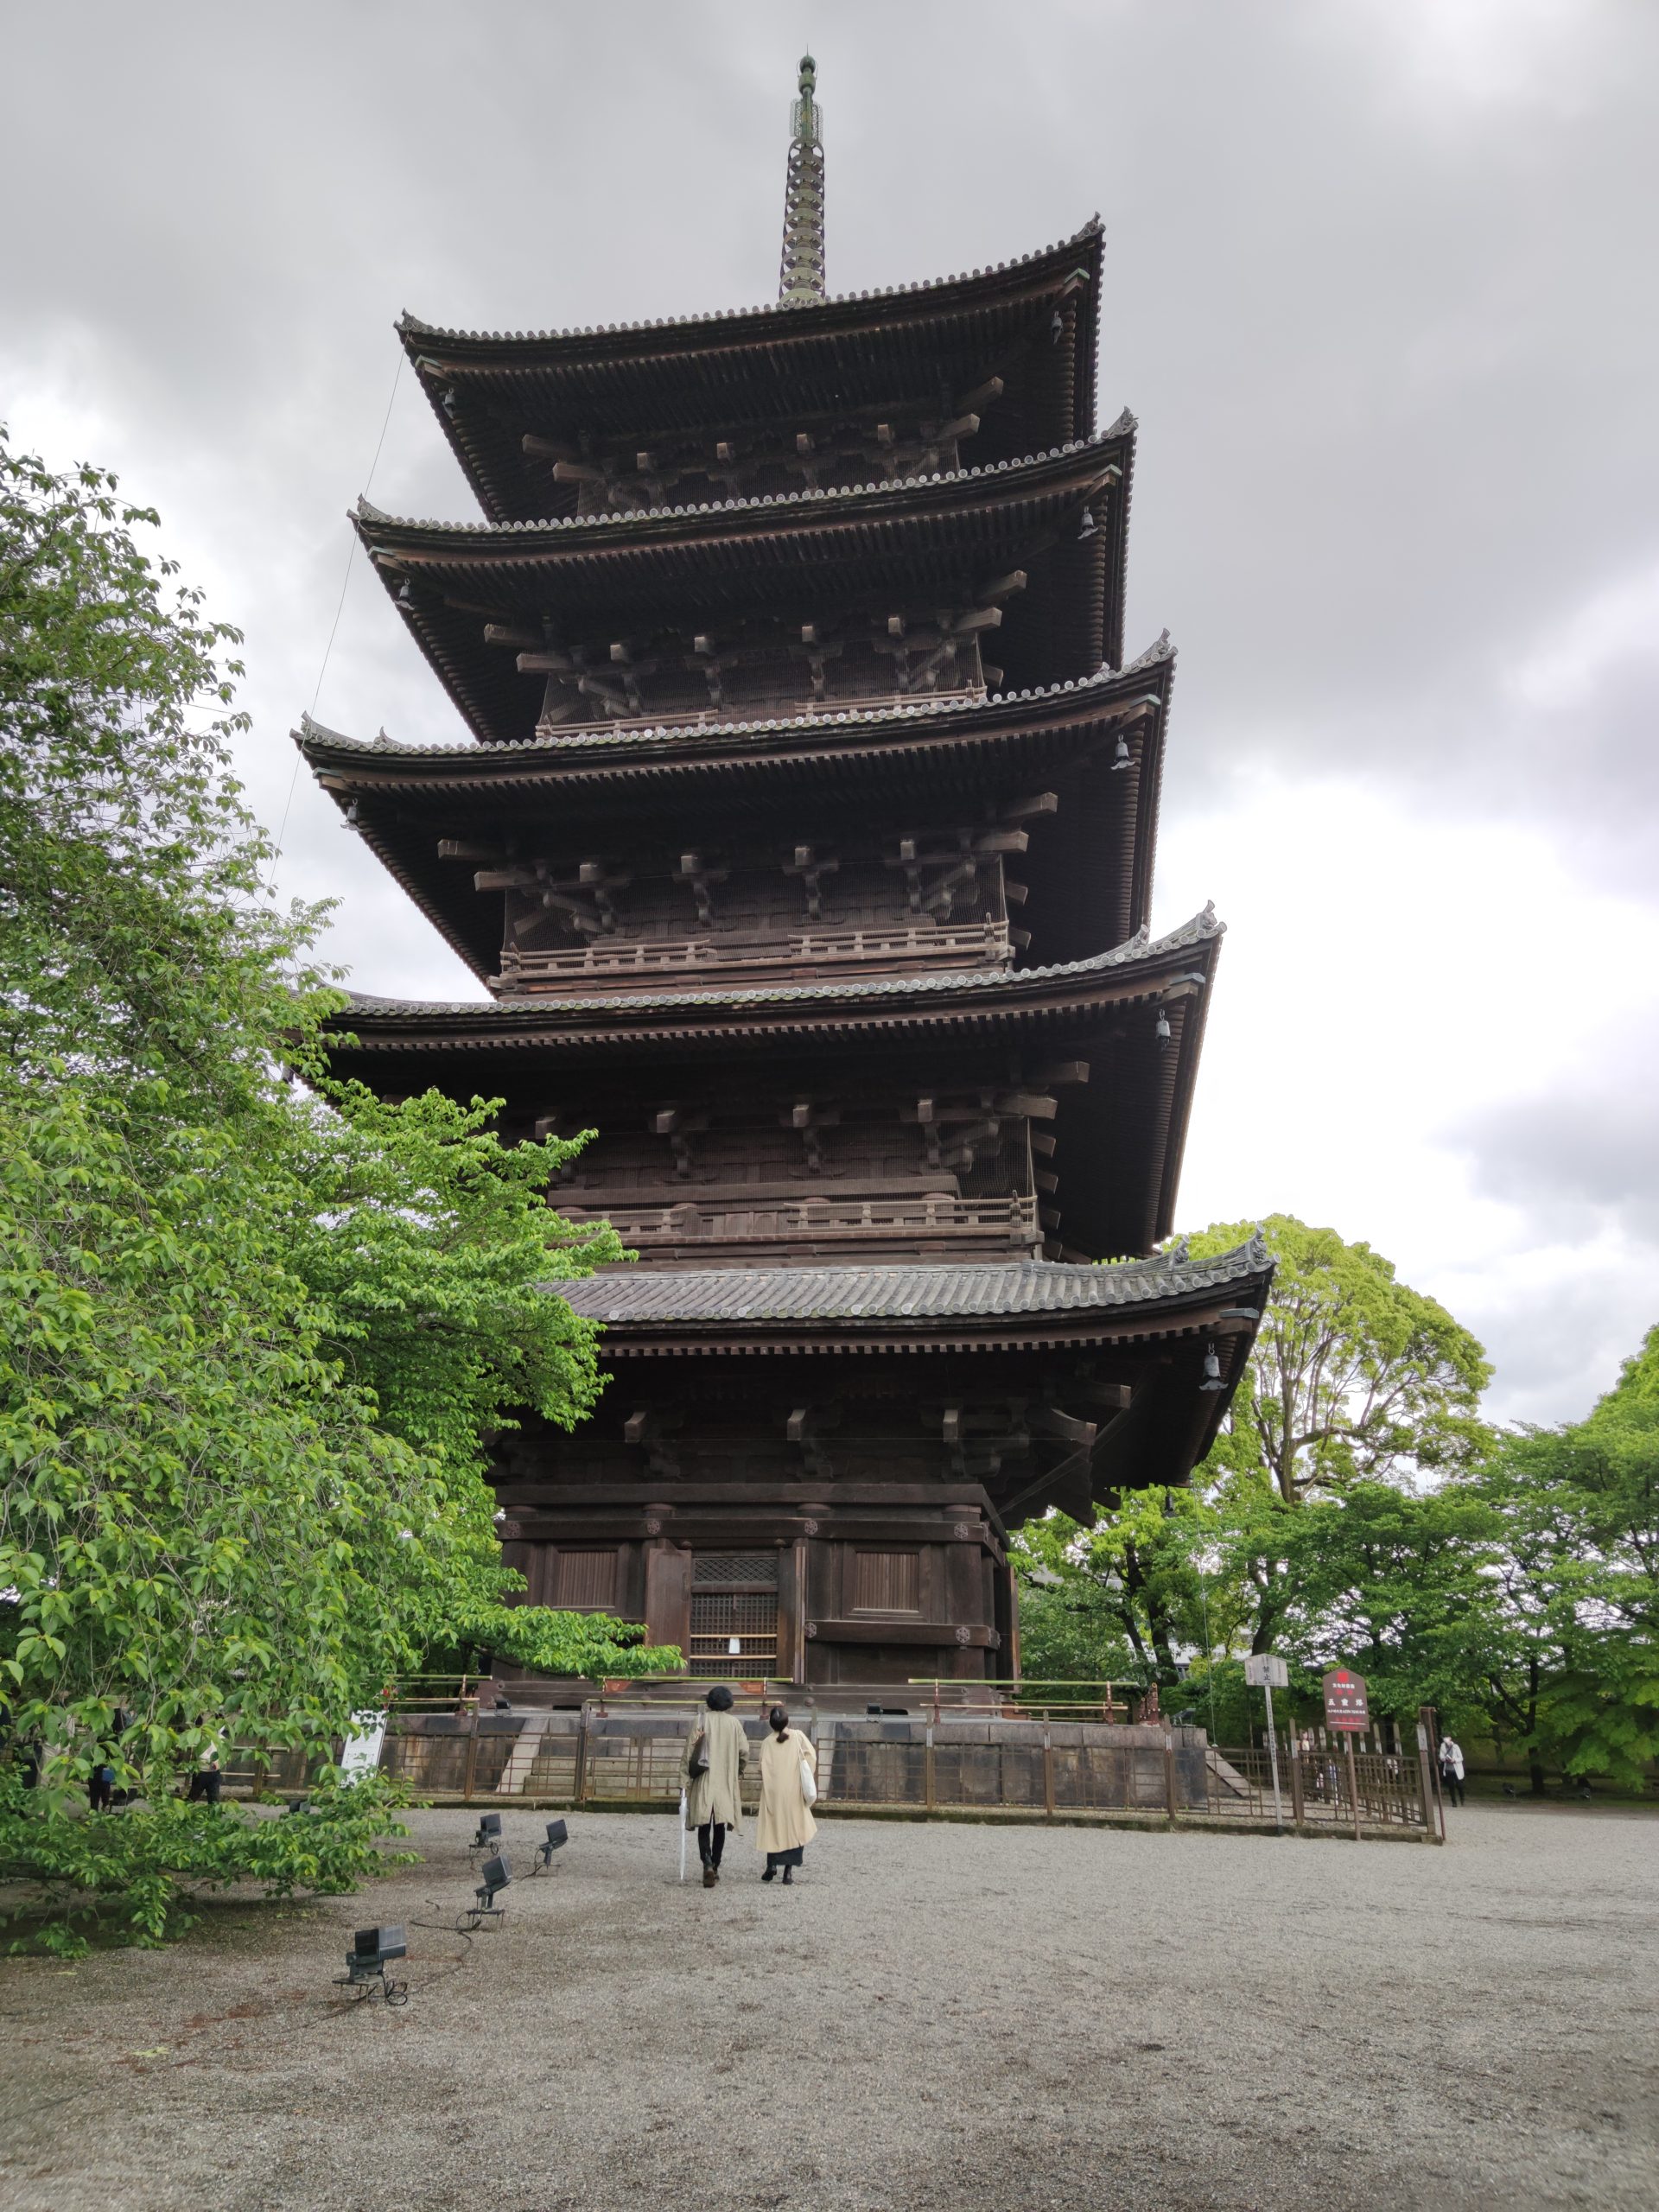 Toji Five-story Pagoda